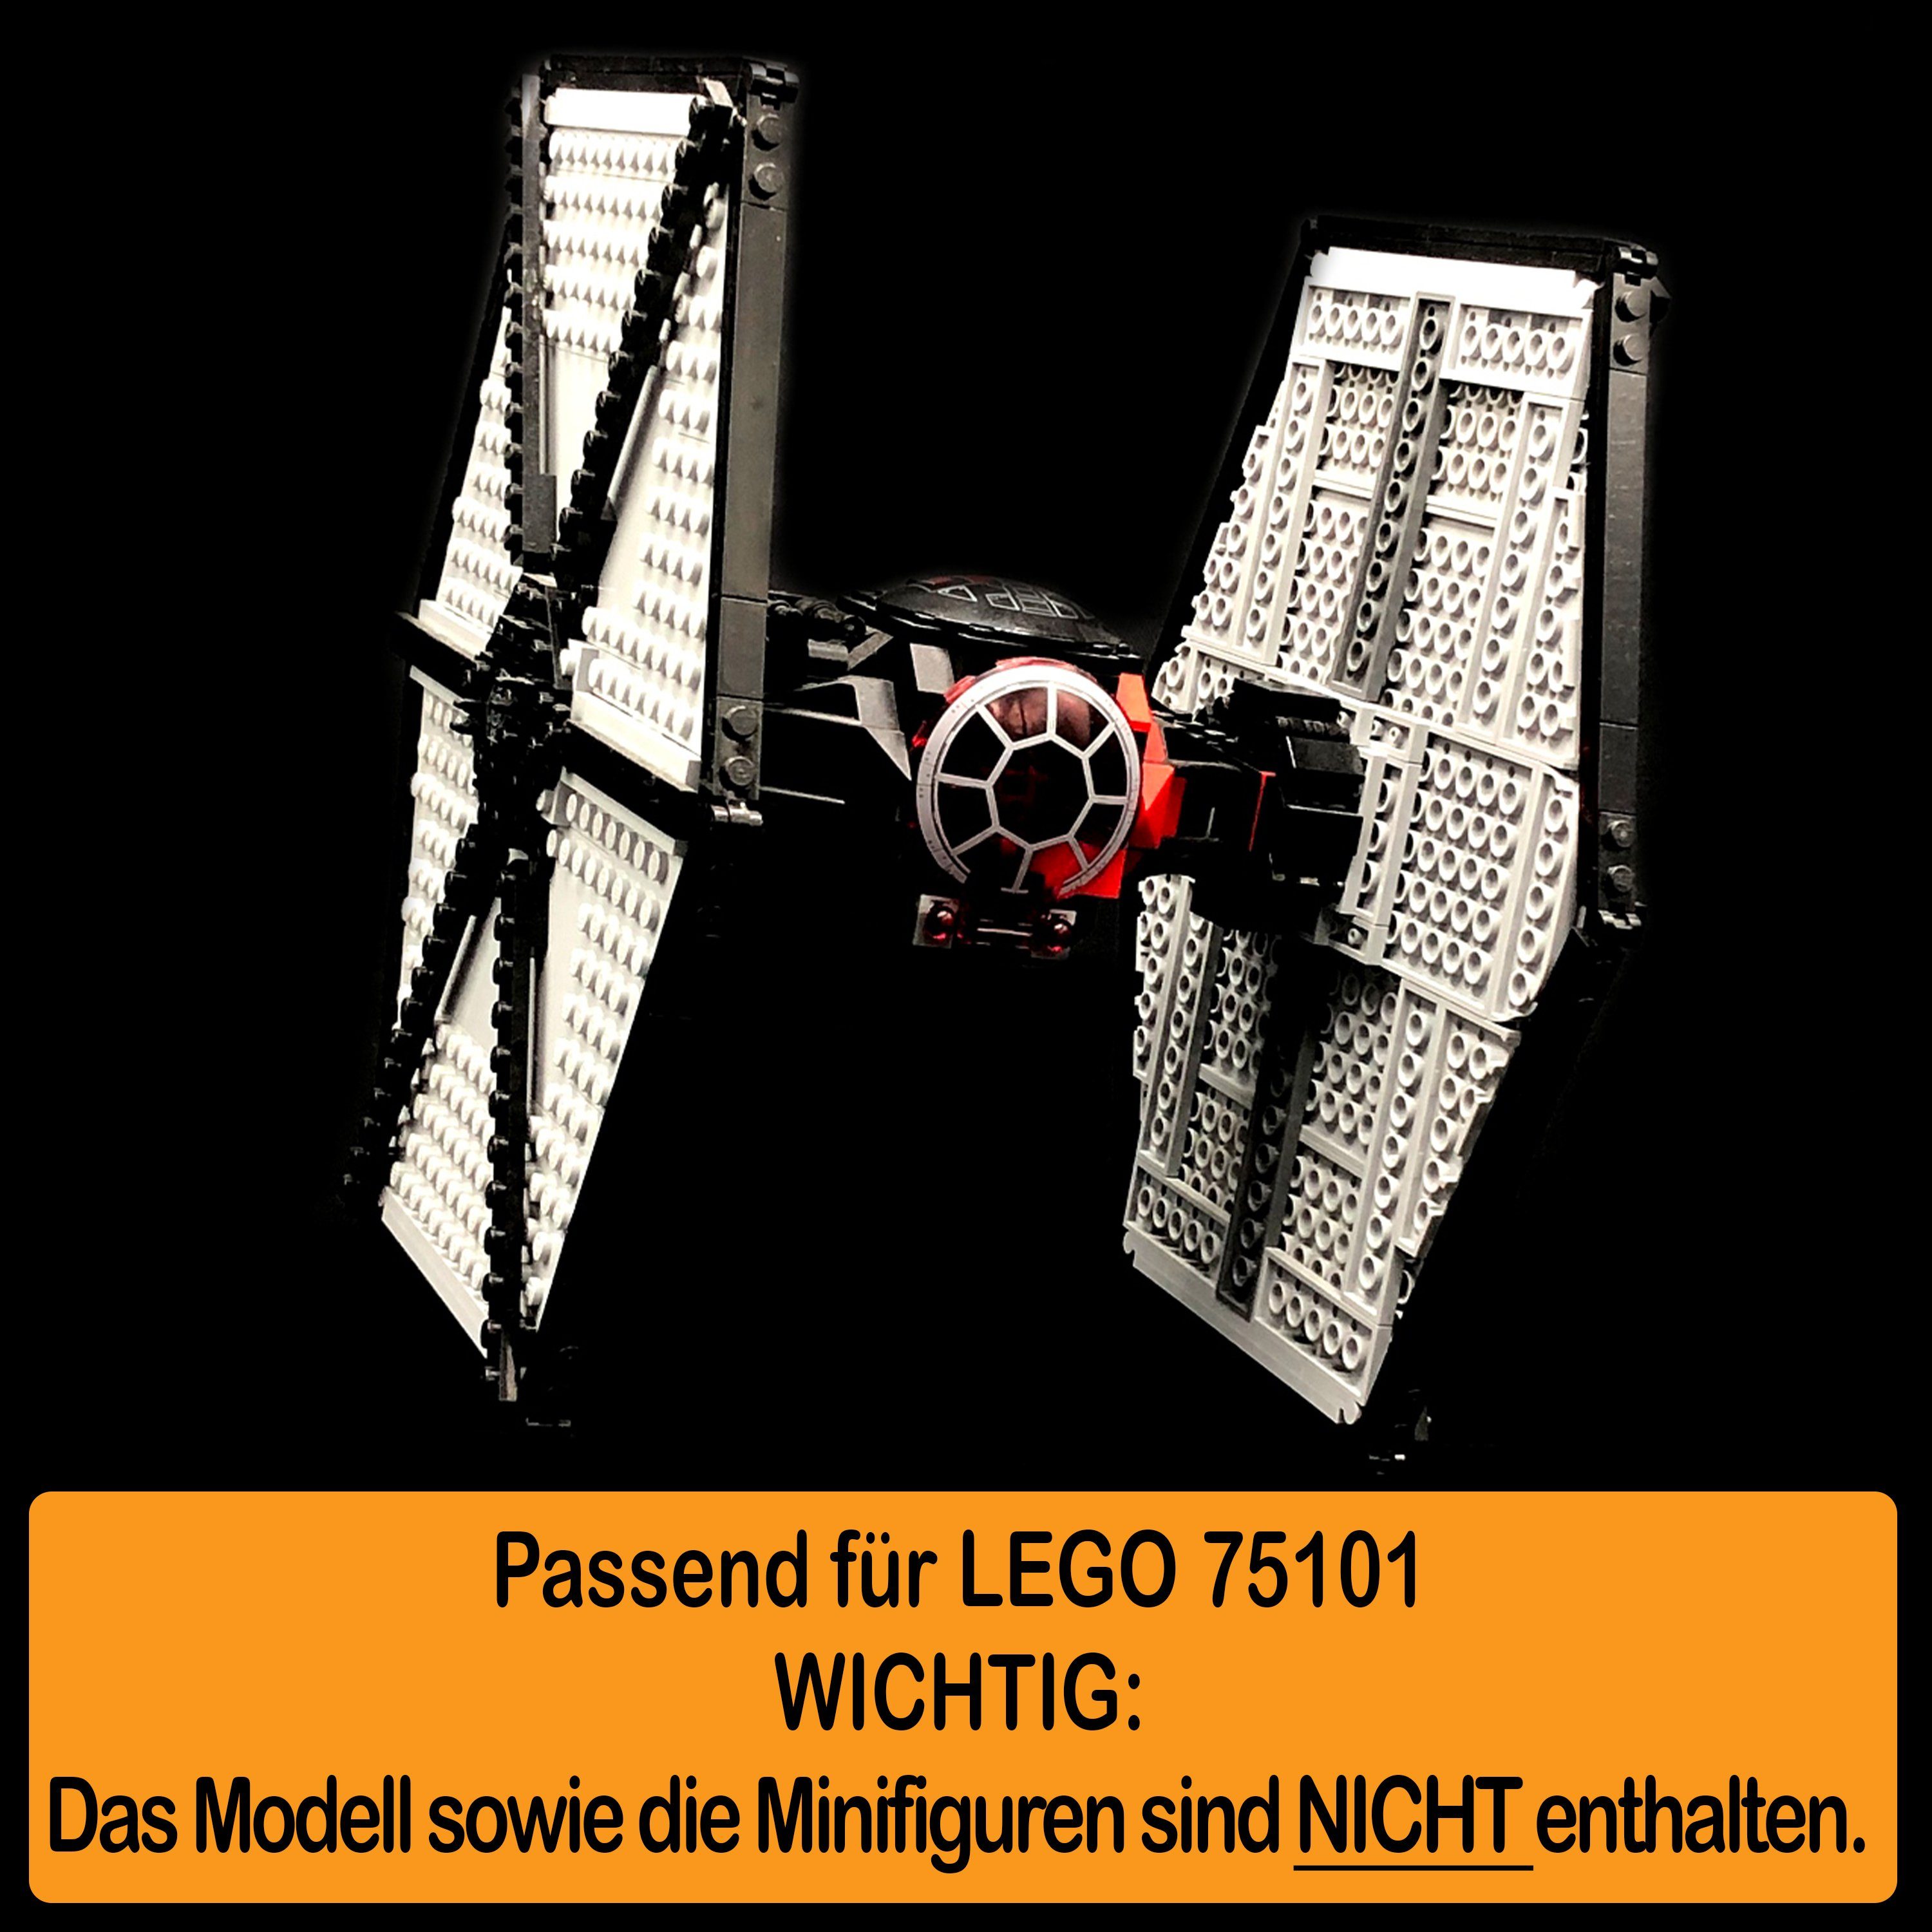 100% einstellbar, (verschiedene Winkel Special 75101 Standfuß TIE First AREA17 zum Forces Germany Order selbst LEGO Stand Fighter Display und Made zusammenbauen), Positionen Acryl in